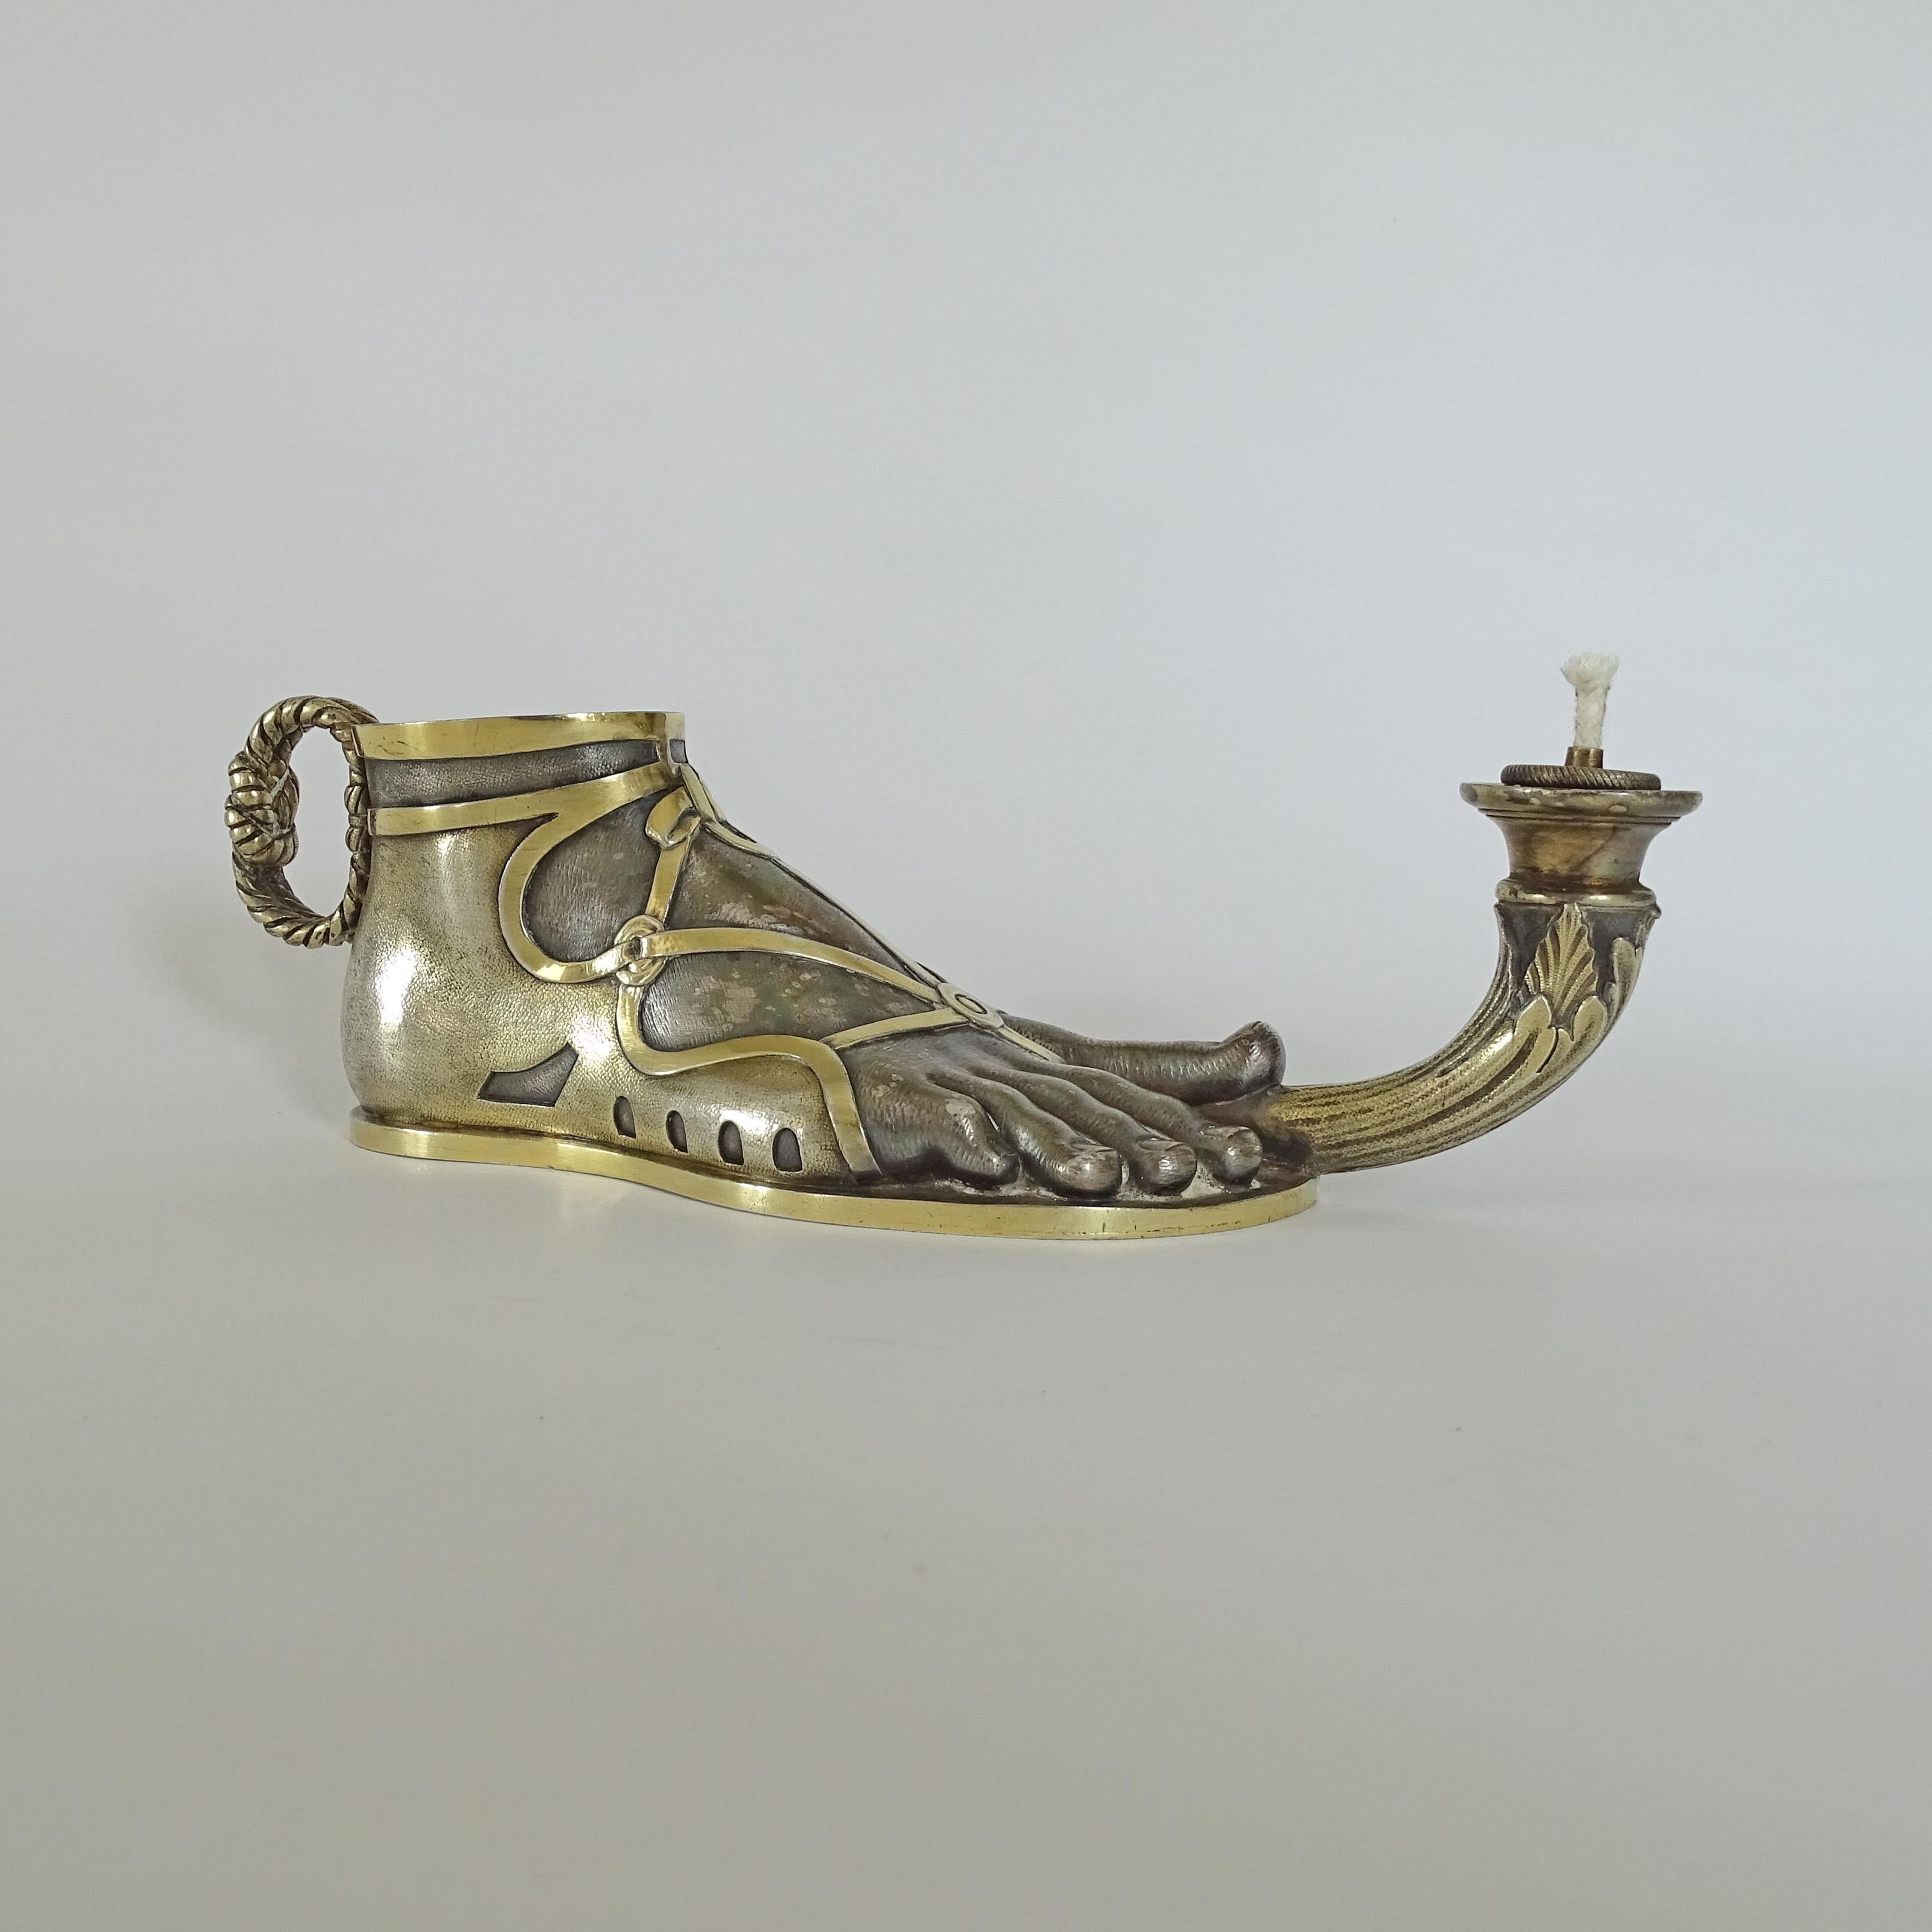 Splendid Elkington & Co. Roman Foot Sterling silver oil lamp, England 1840s

